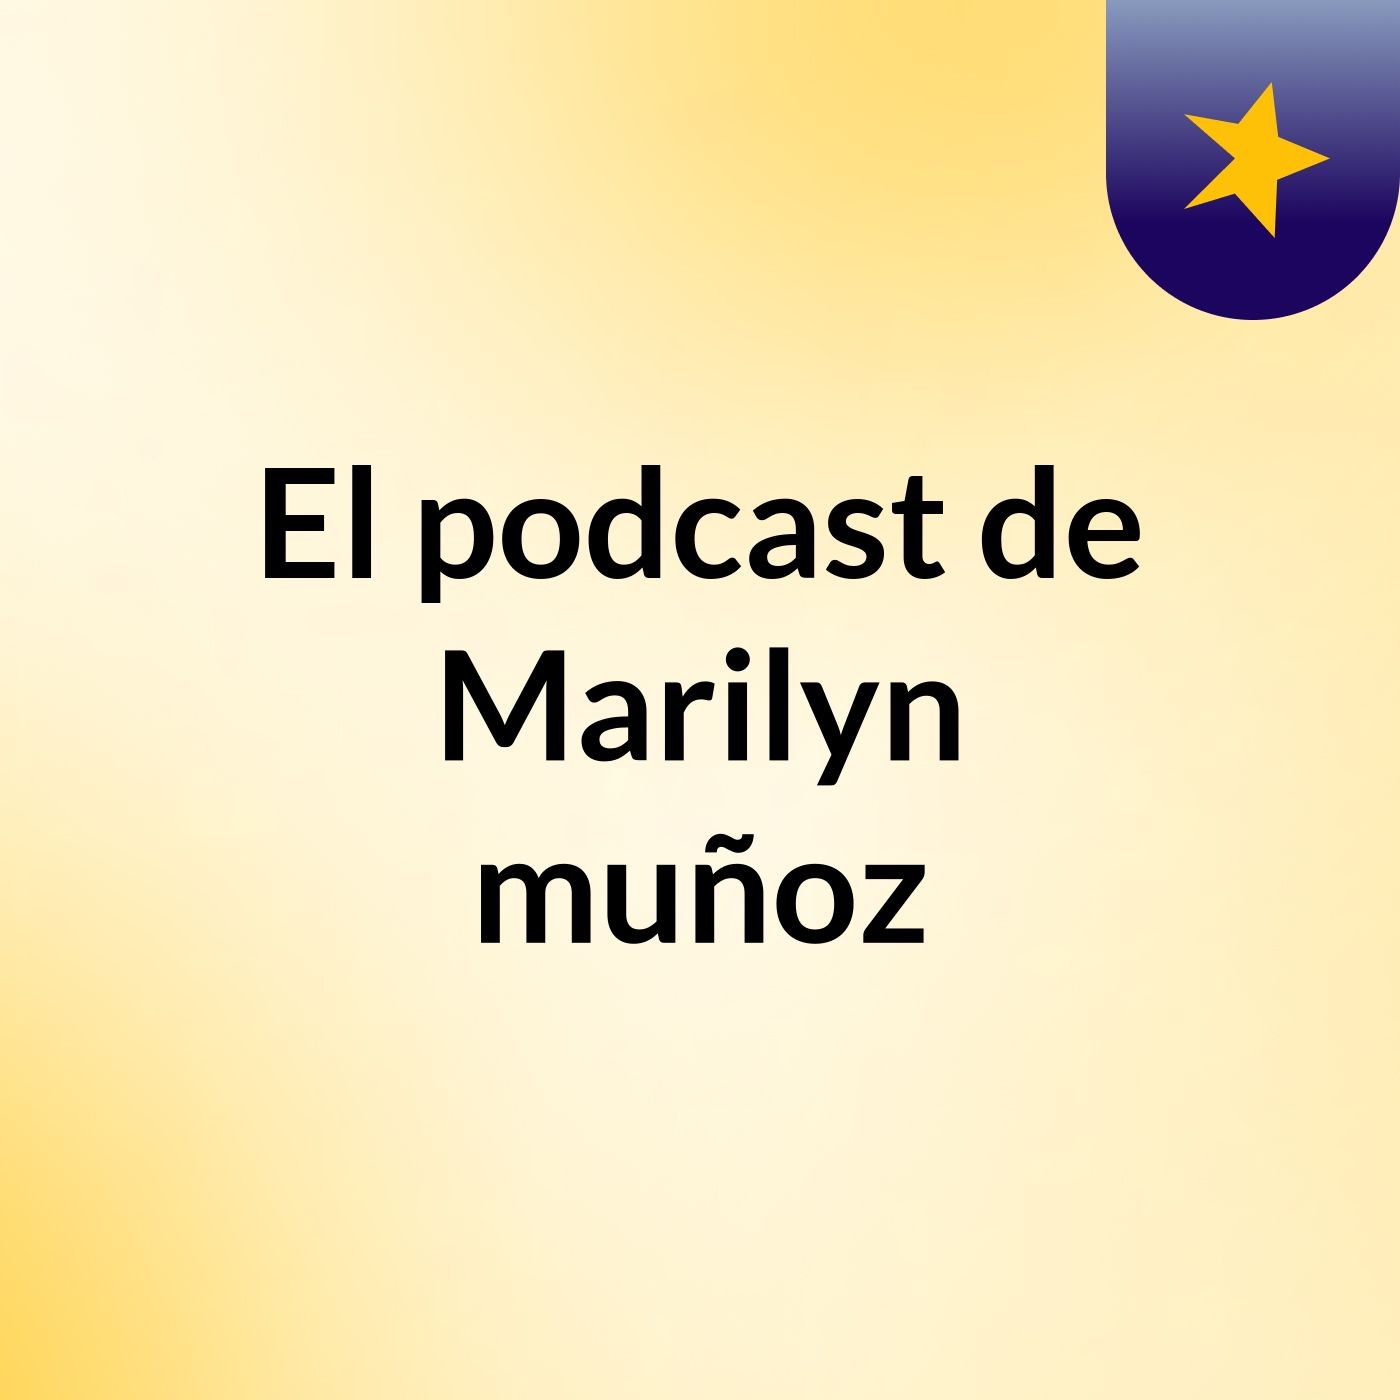 El podcast de Marilyn muñoz